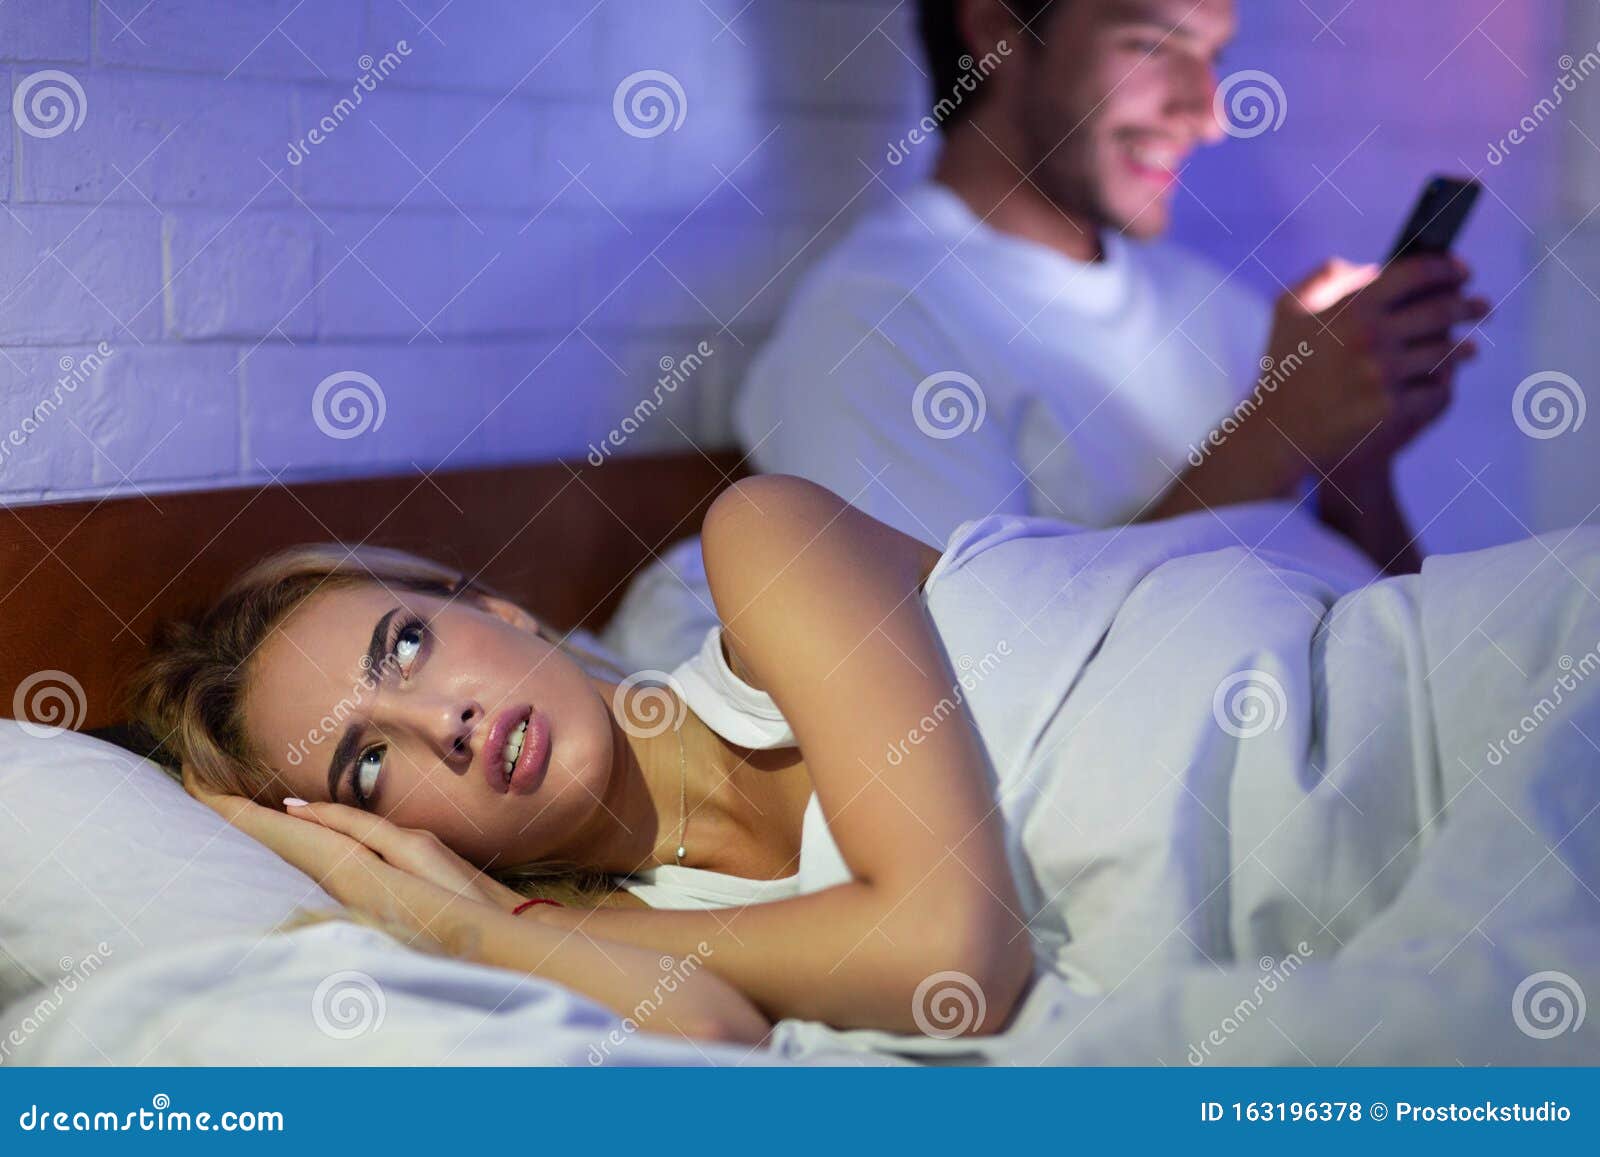 Русское видео с мужем по телефону. Девушка с телефоном в кровати. Девушка лежит с телефоном. Женщина смотрит в телефон мужа.